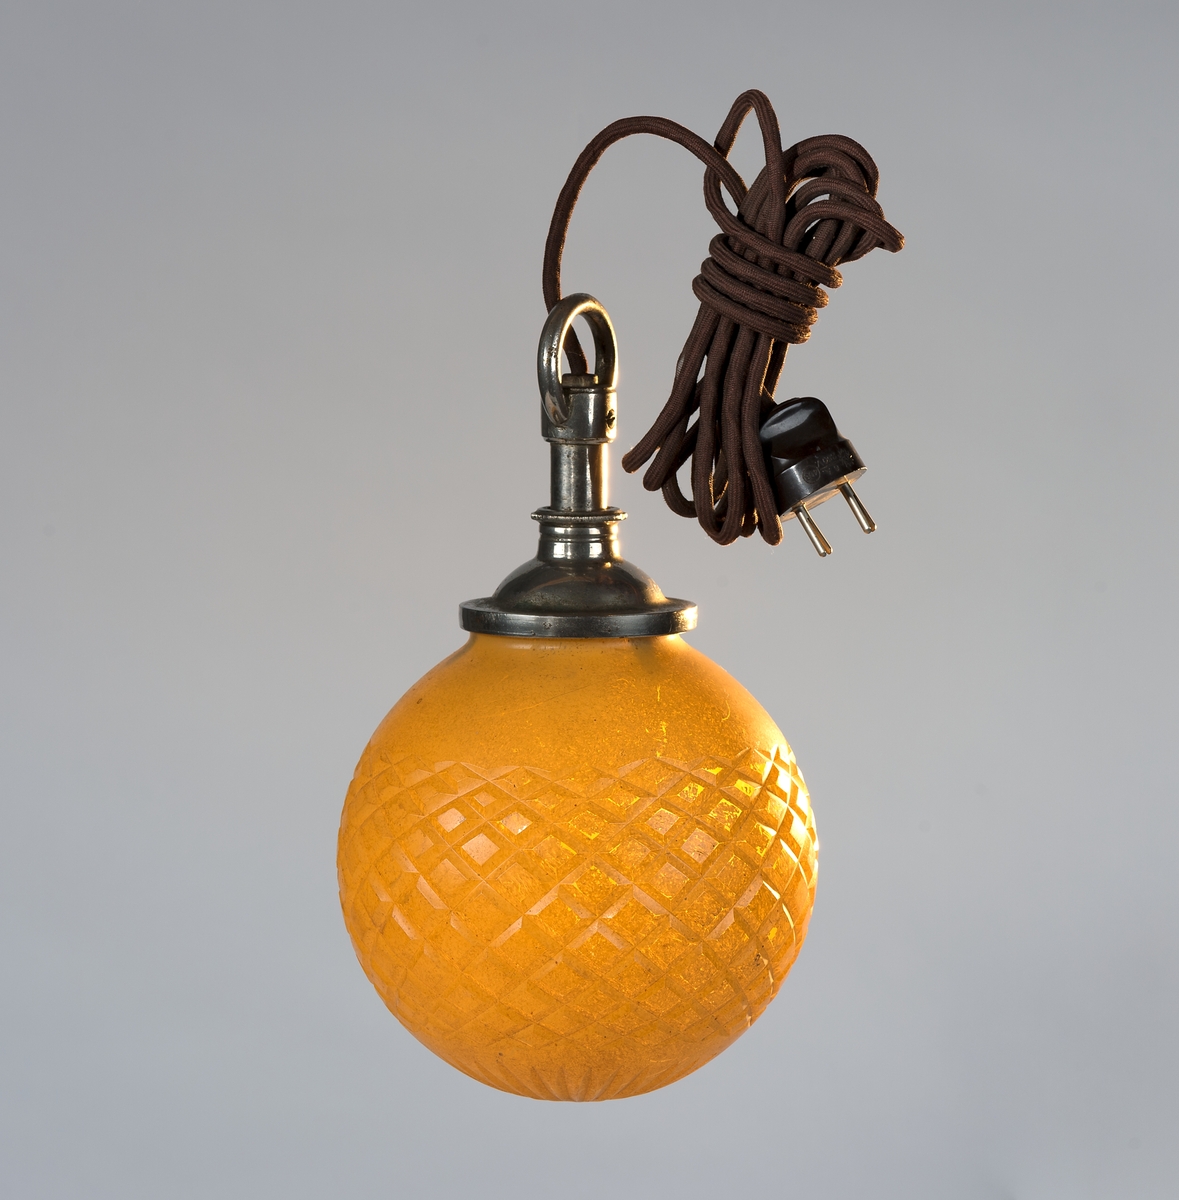 Klotformad gul lampa med stickkontakt.